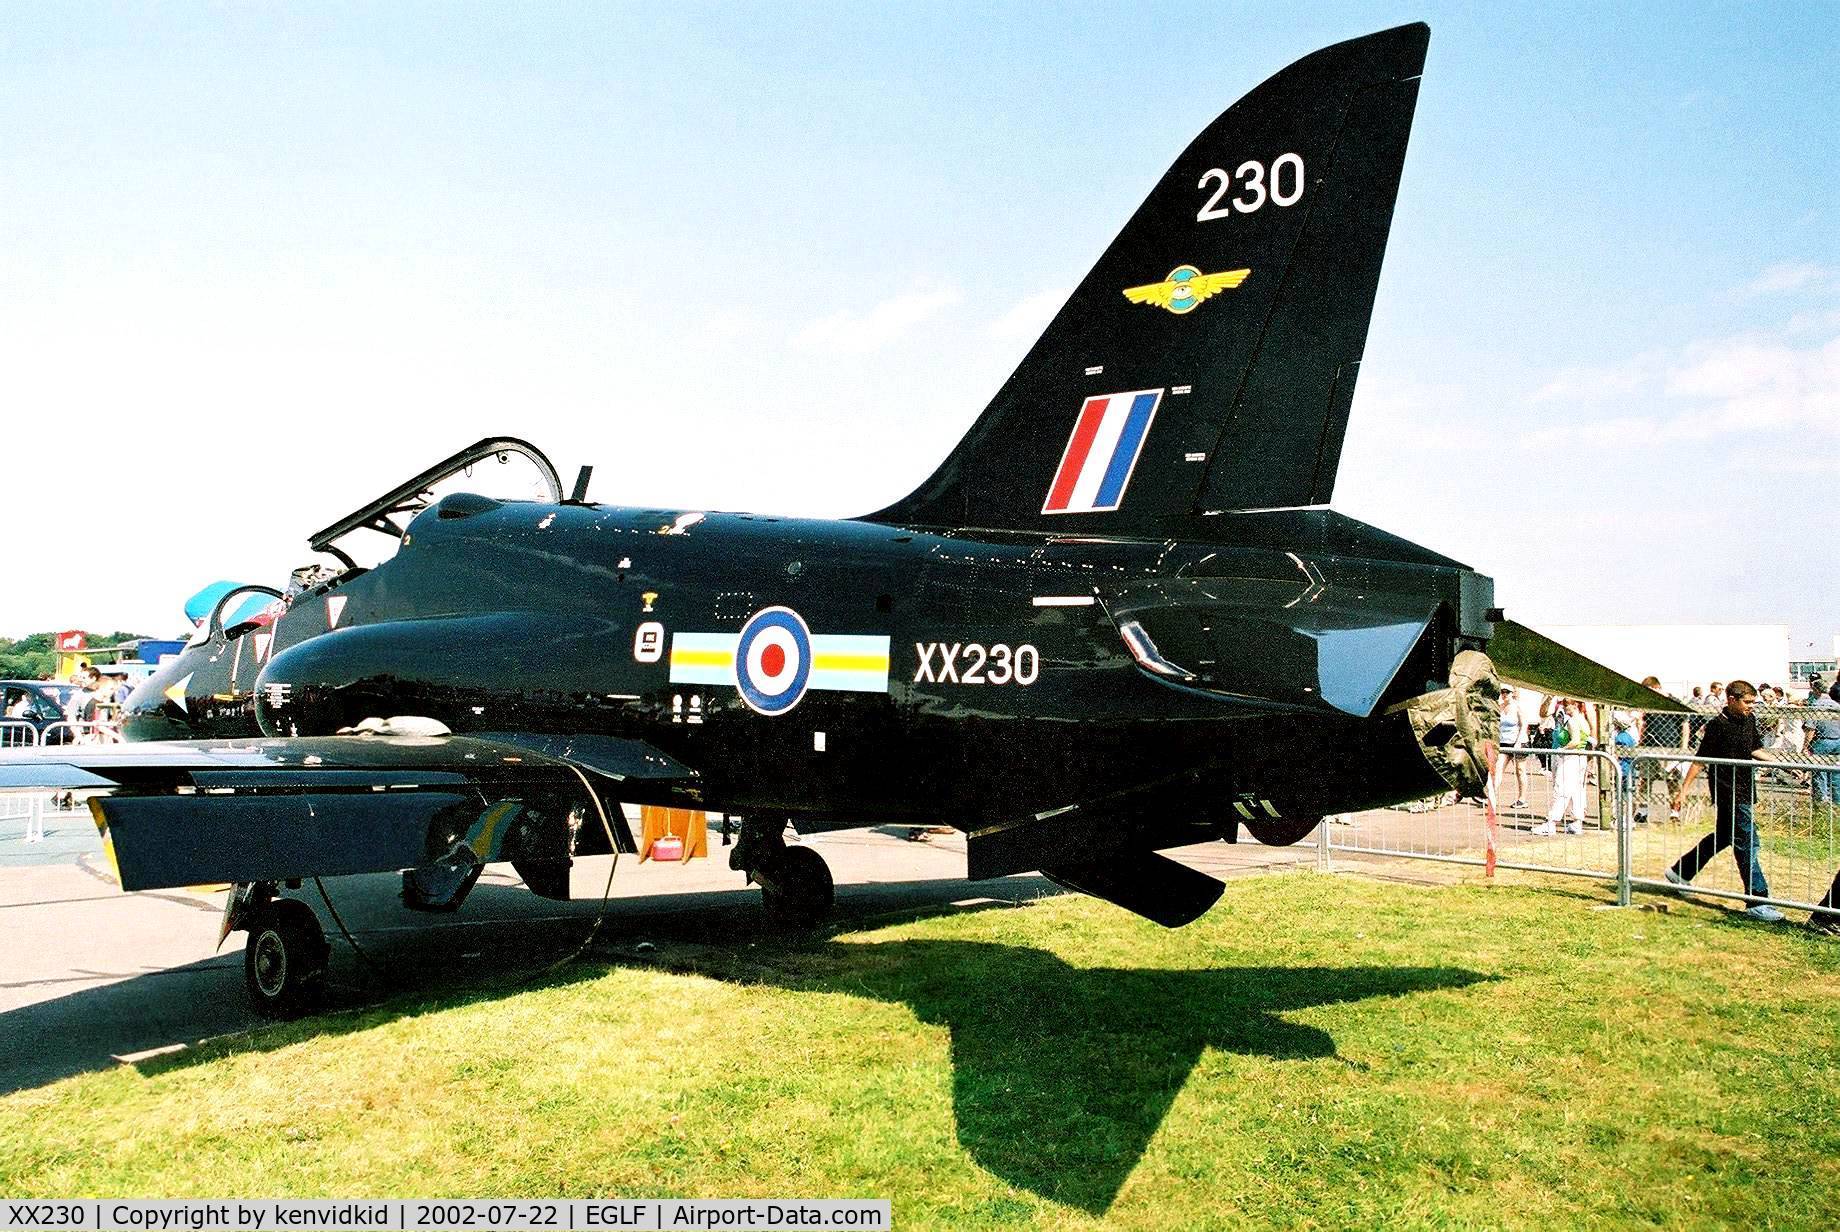 XX230, 1978 Hawker Siddeley Hawk T.1A C/N 066/312066, At Farnborough International 2002.